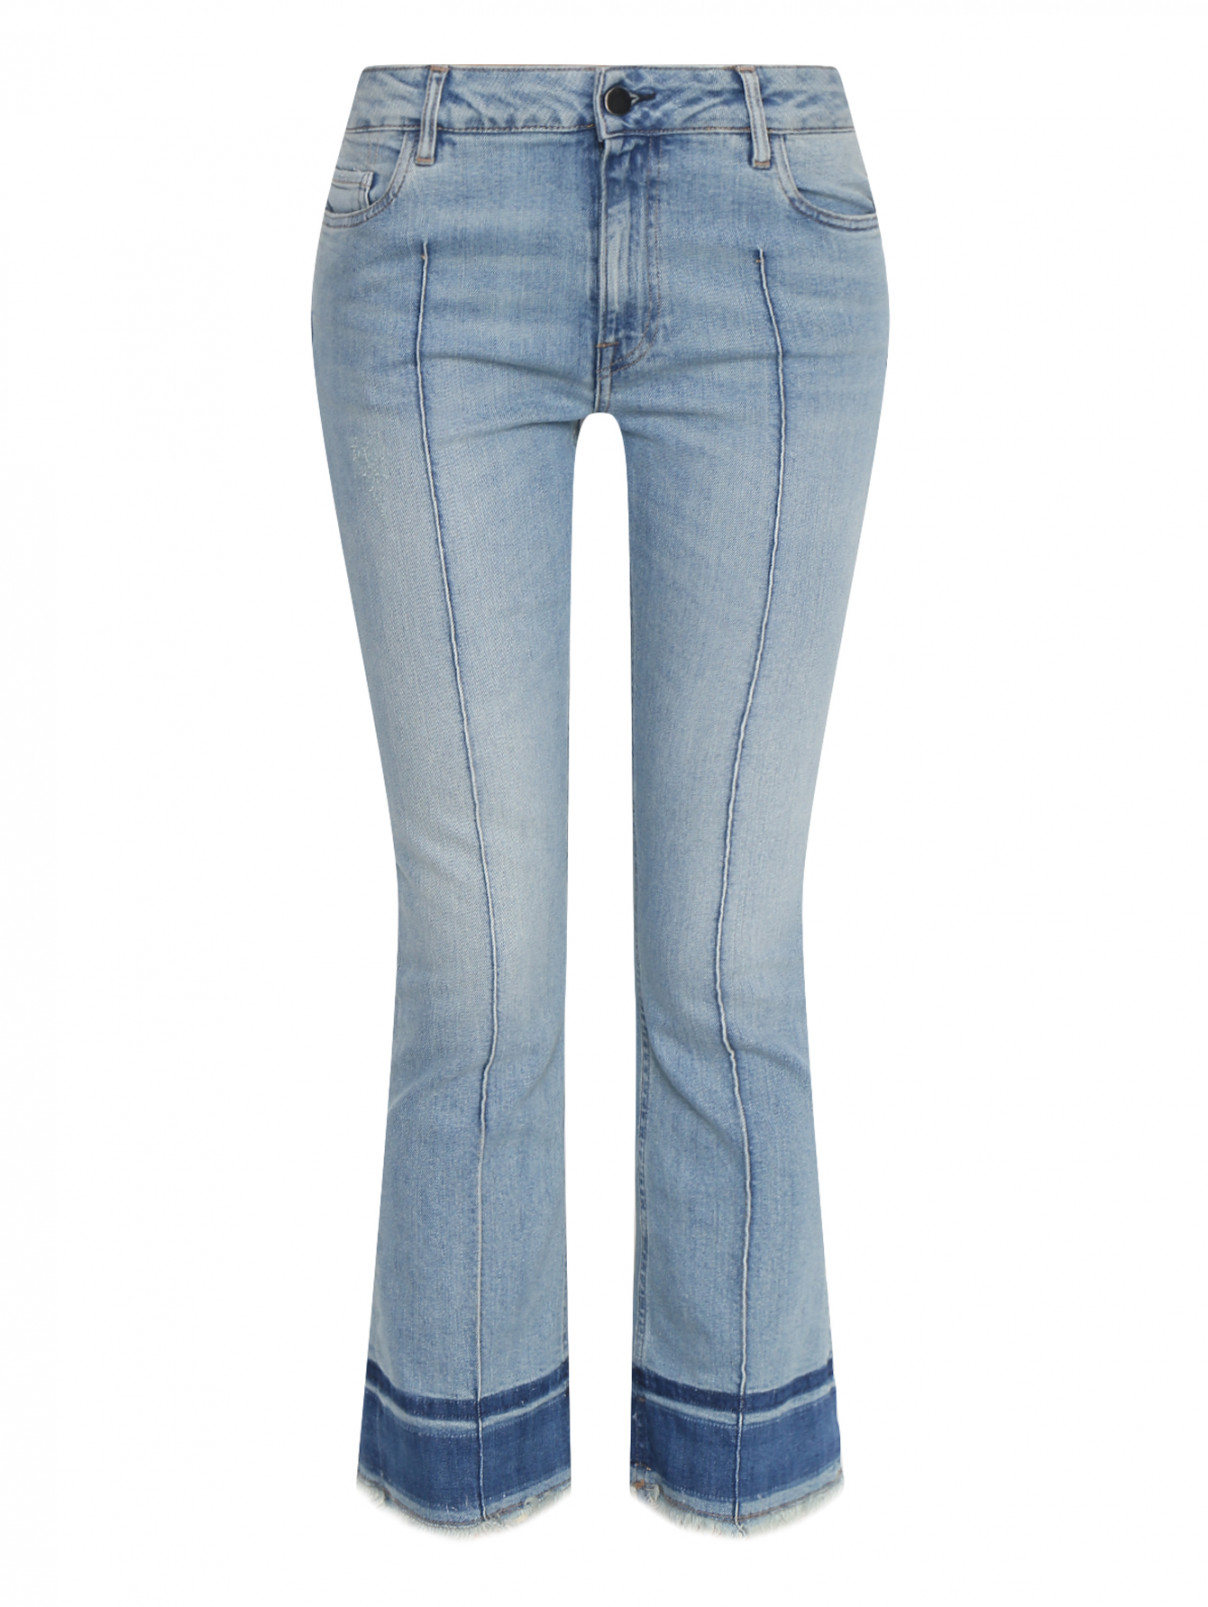 Укороченные джинсы из хлопка Dorothee Schumacher  –  Общий вид  – Цвет:  Синий